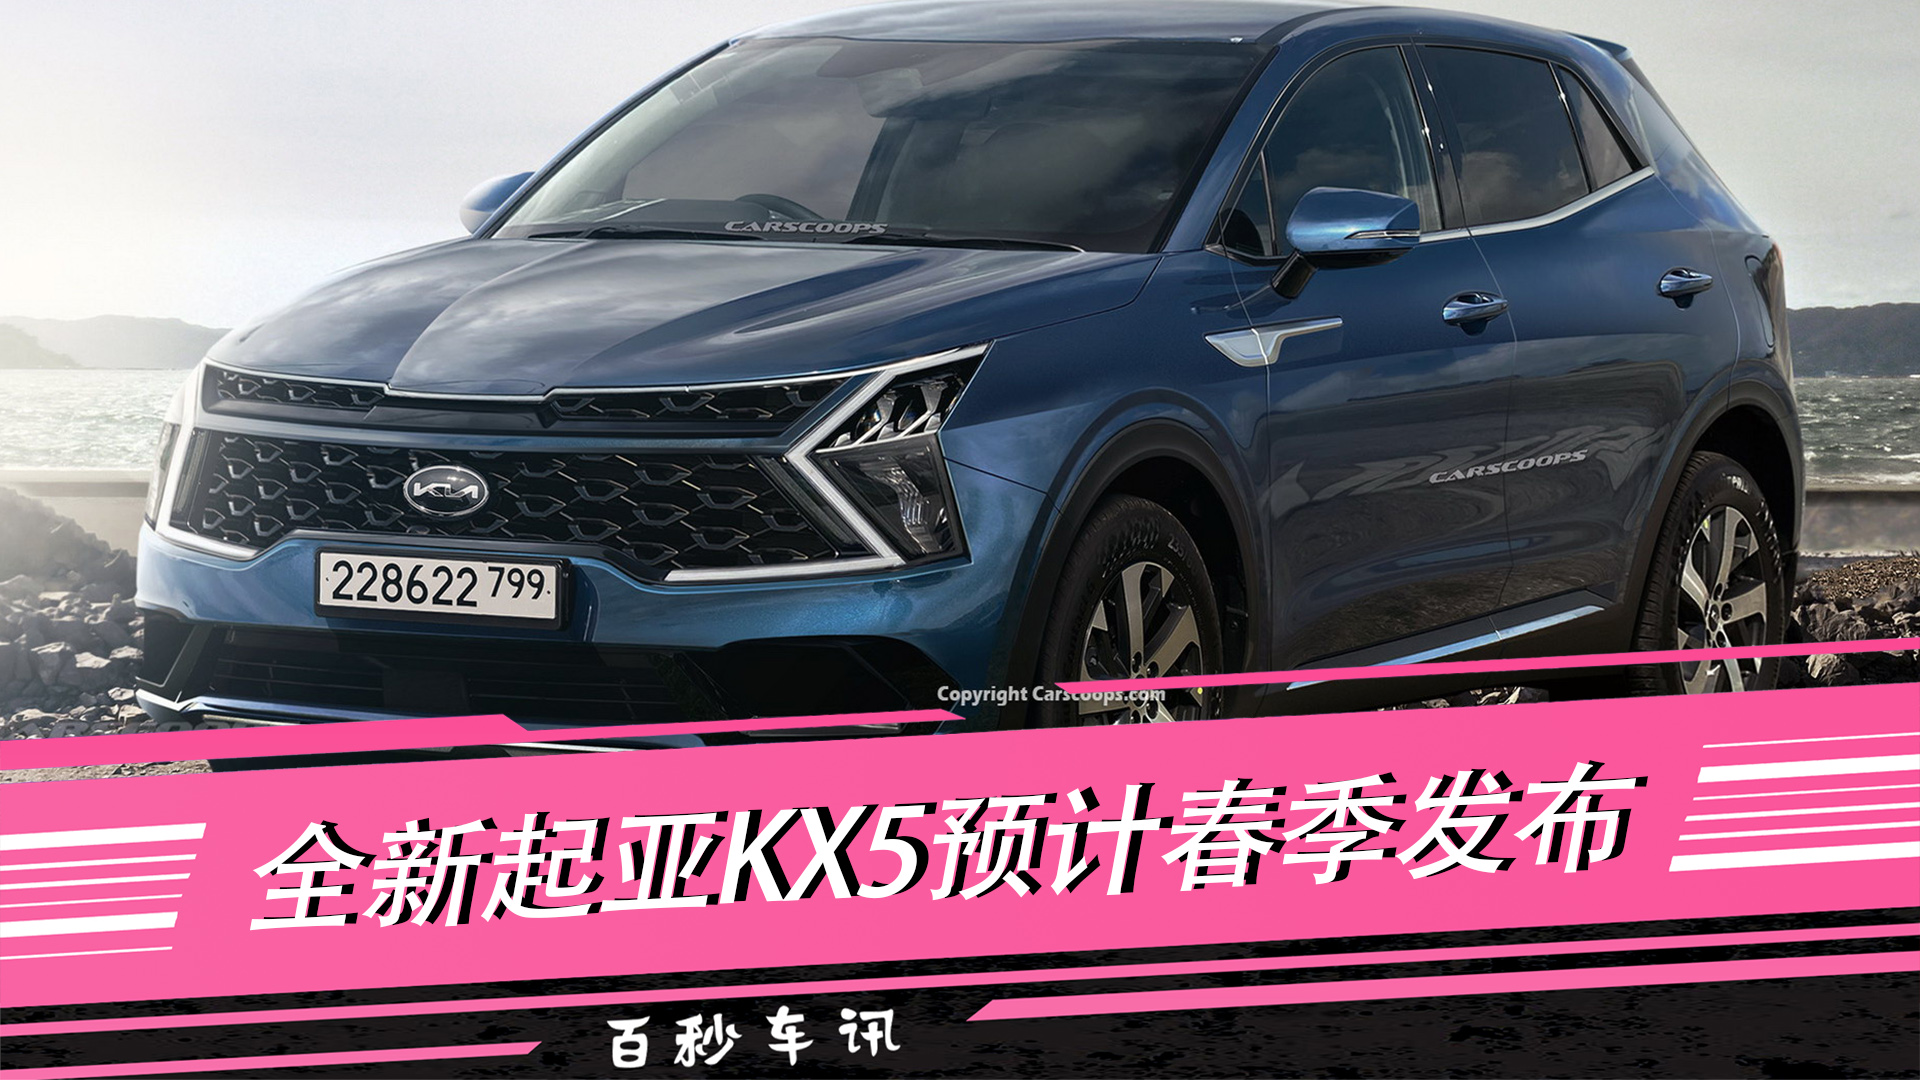 【百秒车讯】采用新的品牌logo 全新起亚KX5预计春季发布视频